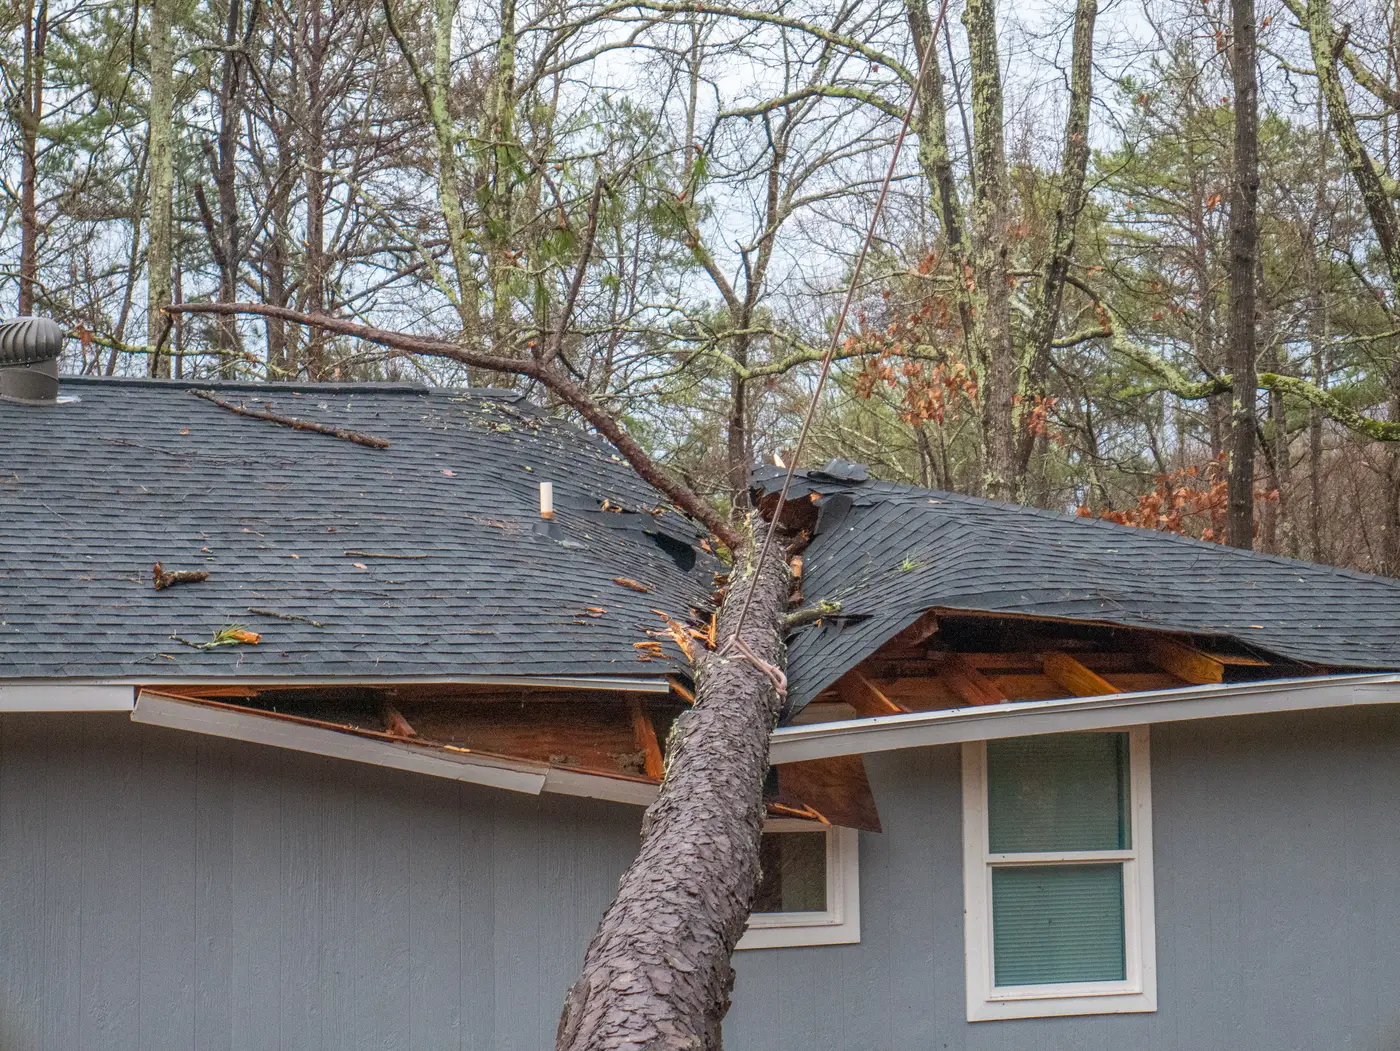 Felled tree on residential asphalt shingle roof